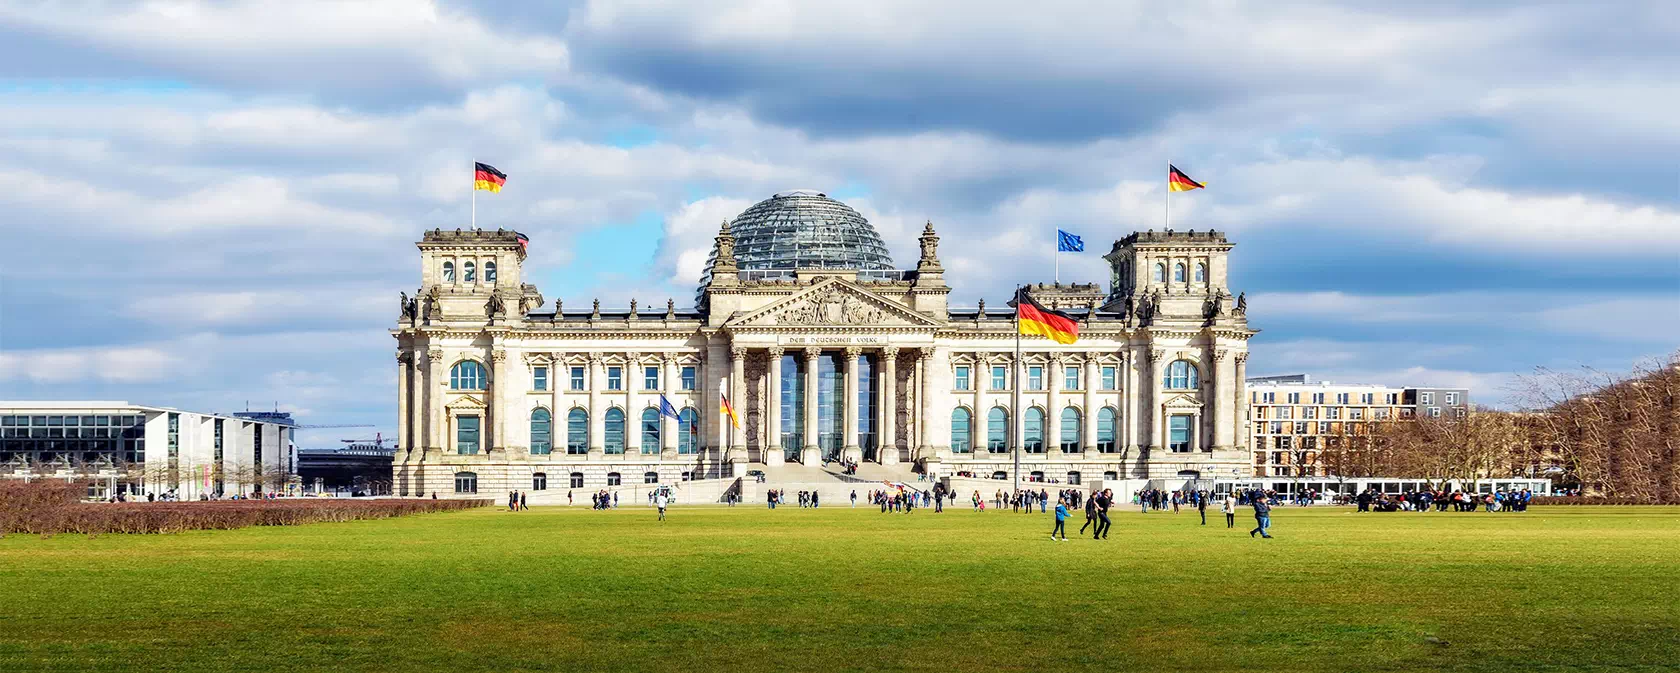 Almanya’da Üniversite Eğitimi Hakkında Bilinmesi Gerekenler